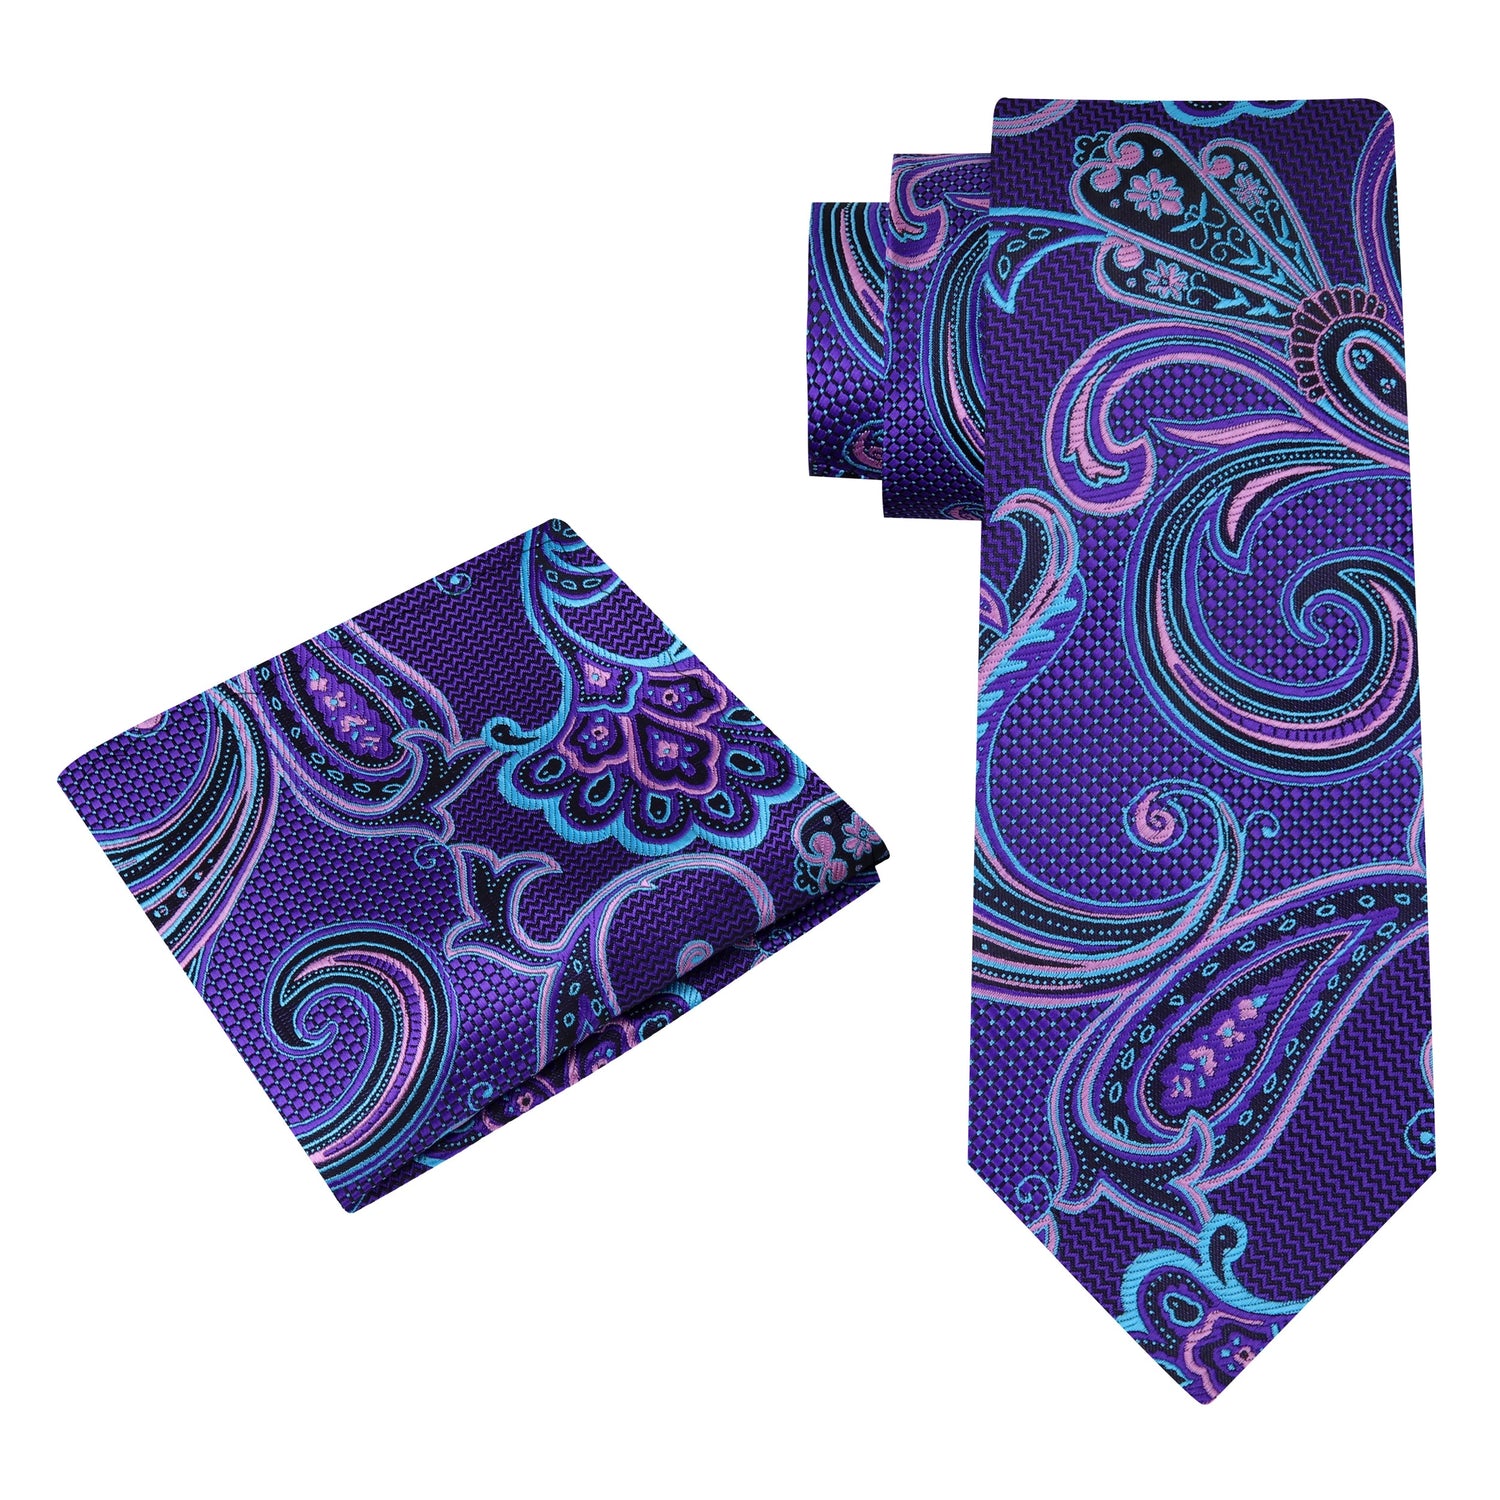 Alt View: A Purple, Light Blue, Black Color Paisley Pattern Silk Necktie, Matching Pocket Square